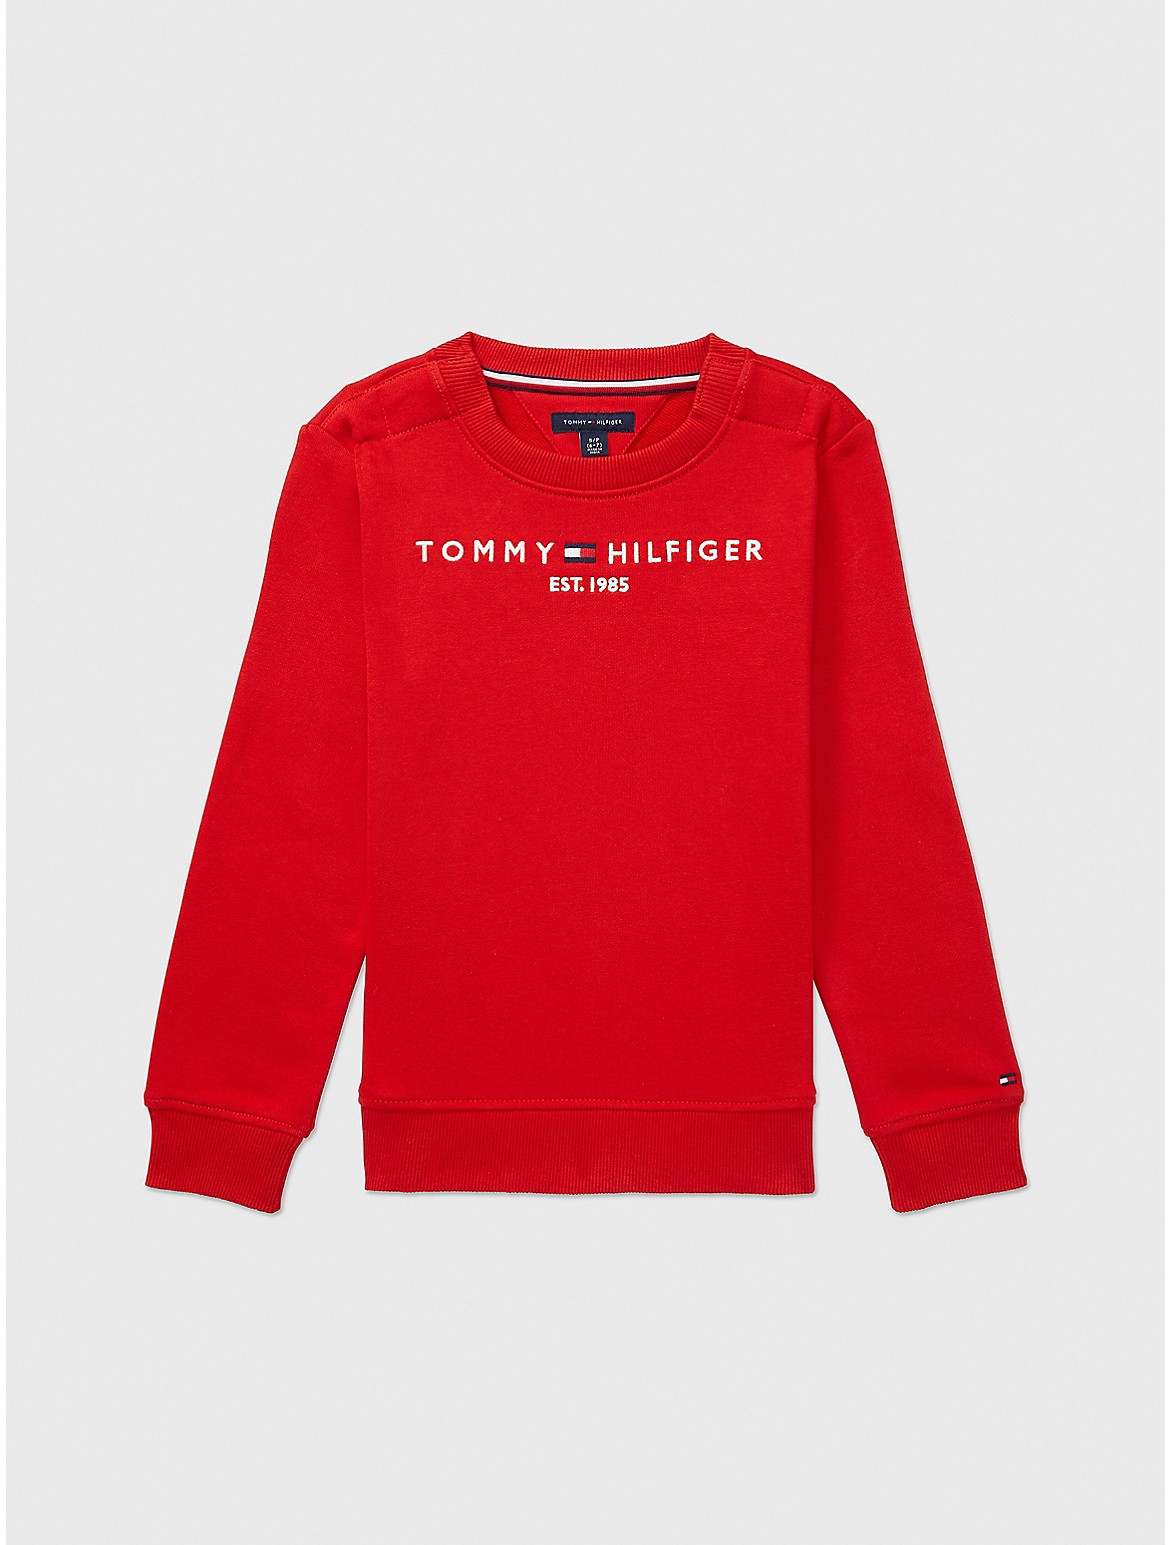 Tommy Hilfiger Boys' Classic Sweatshirt - Red - M